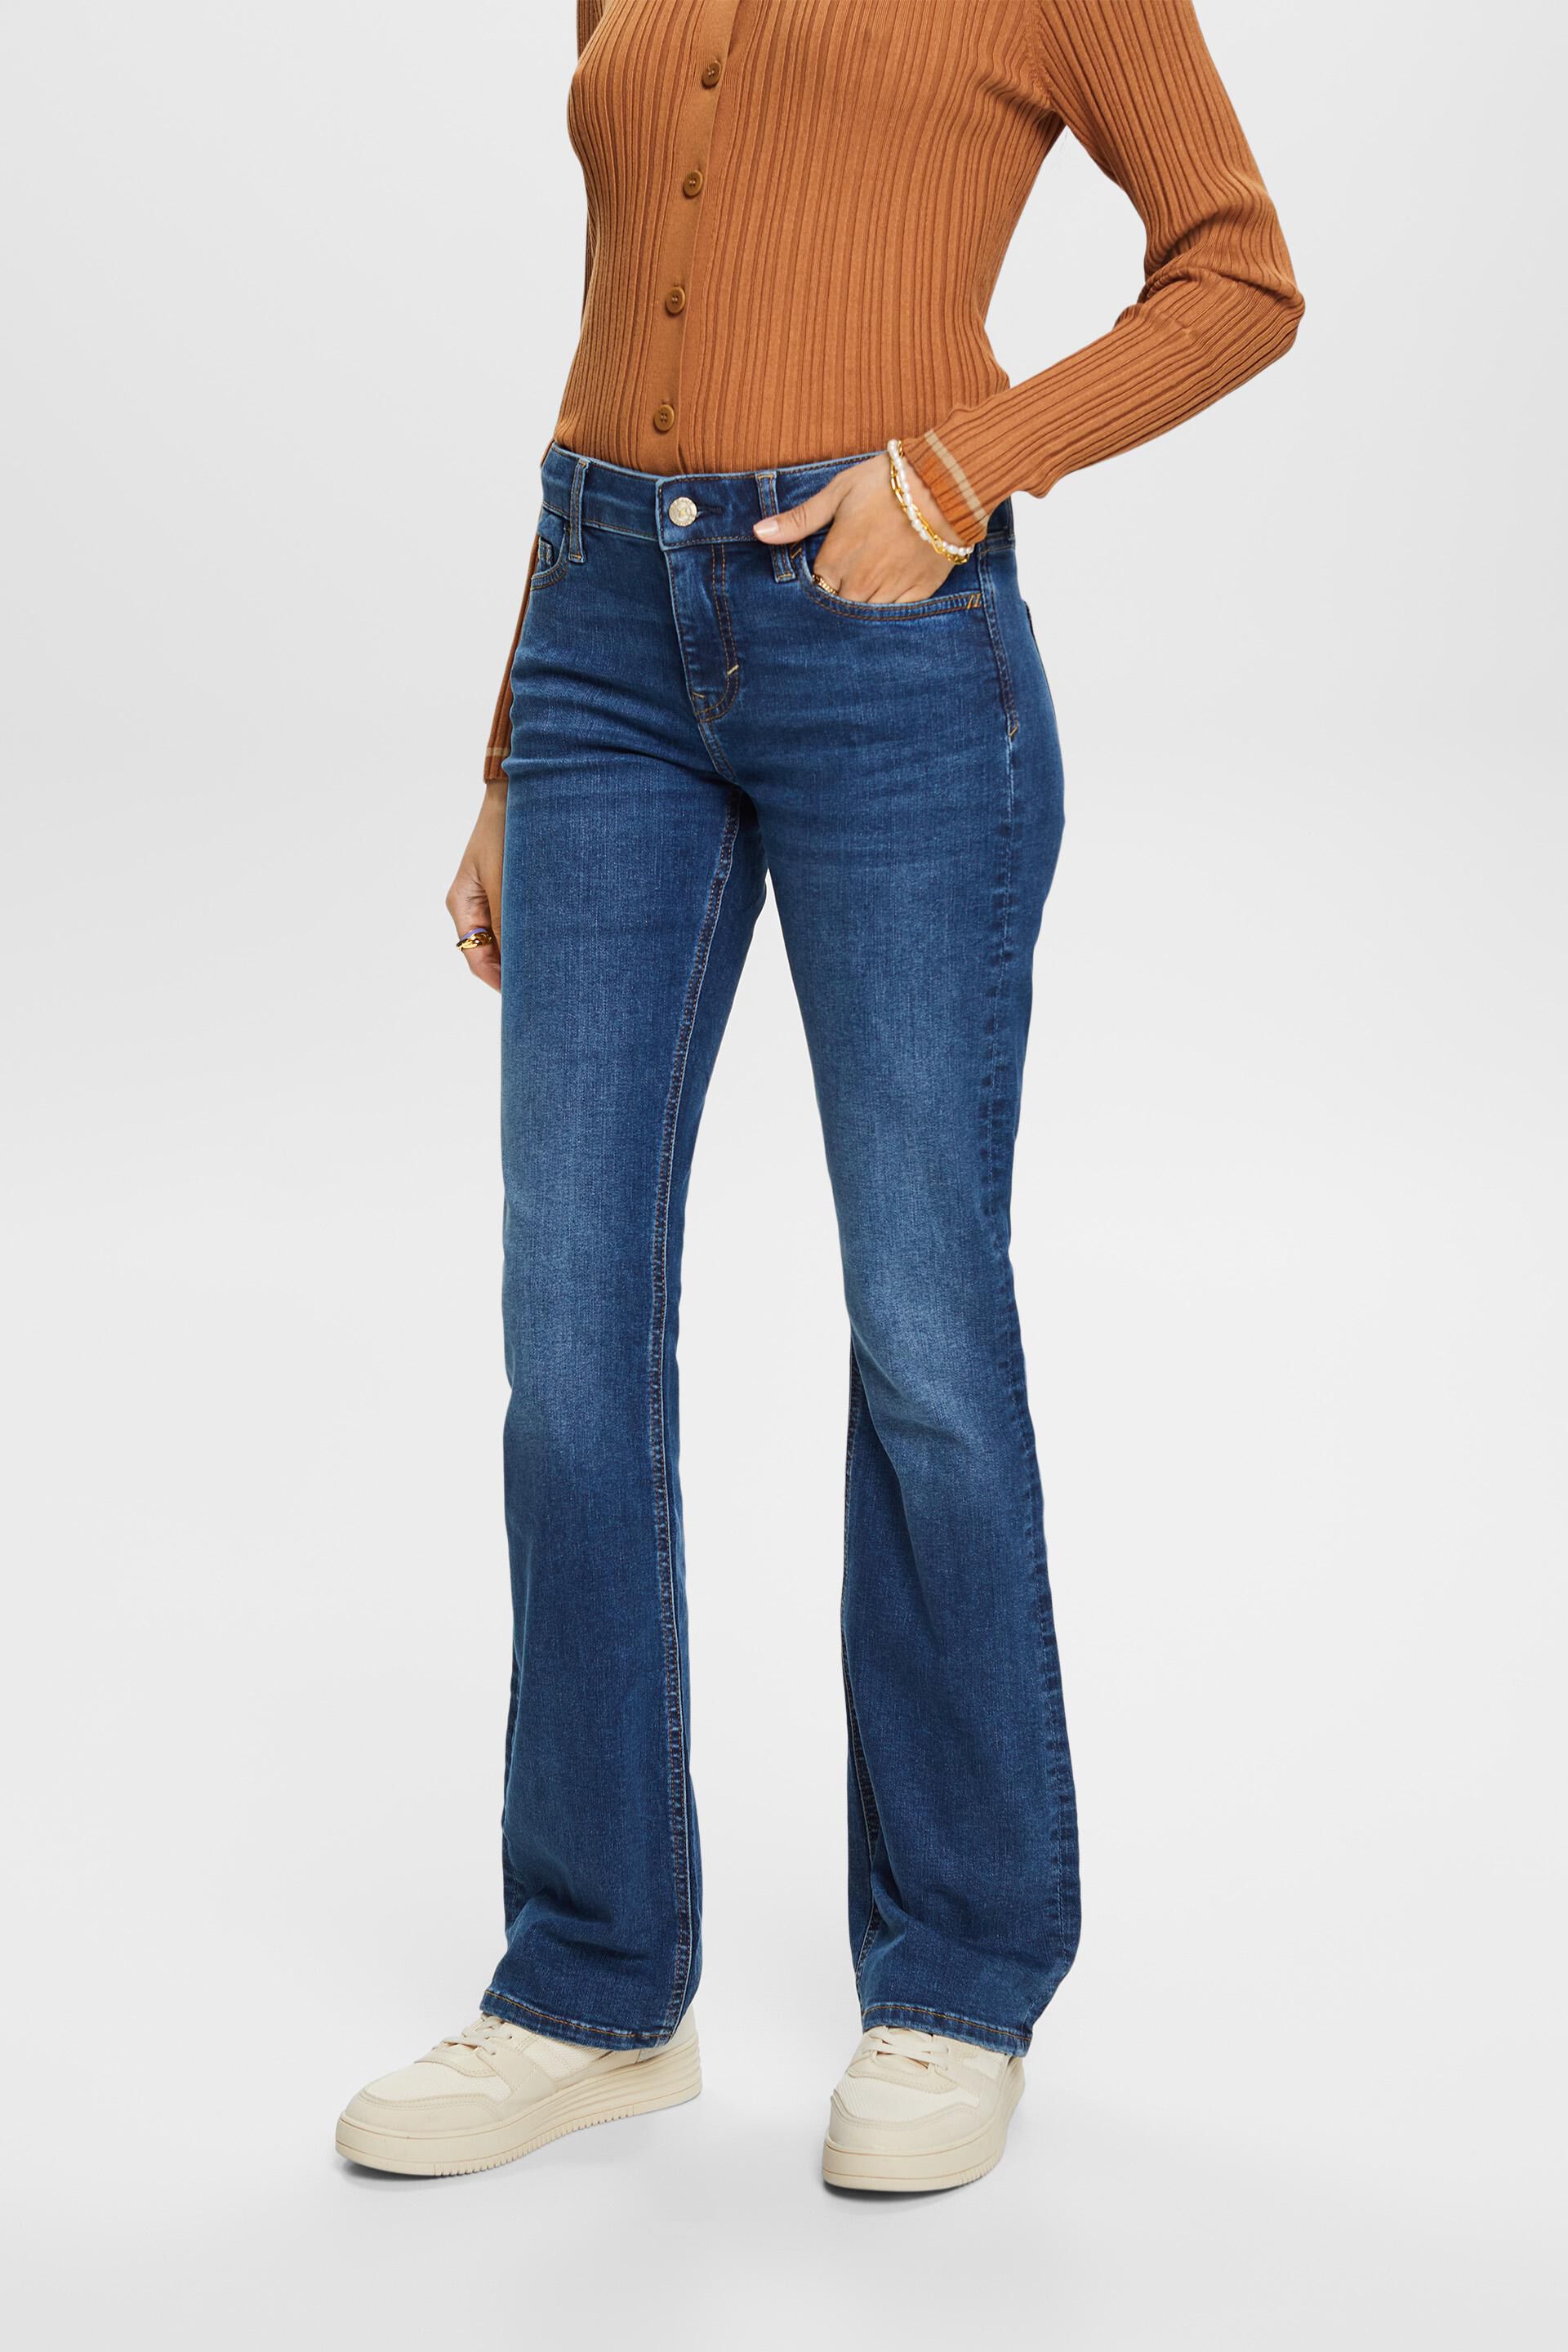 Esprit Damen Bootcut Mid-Rise Jeans